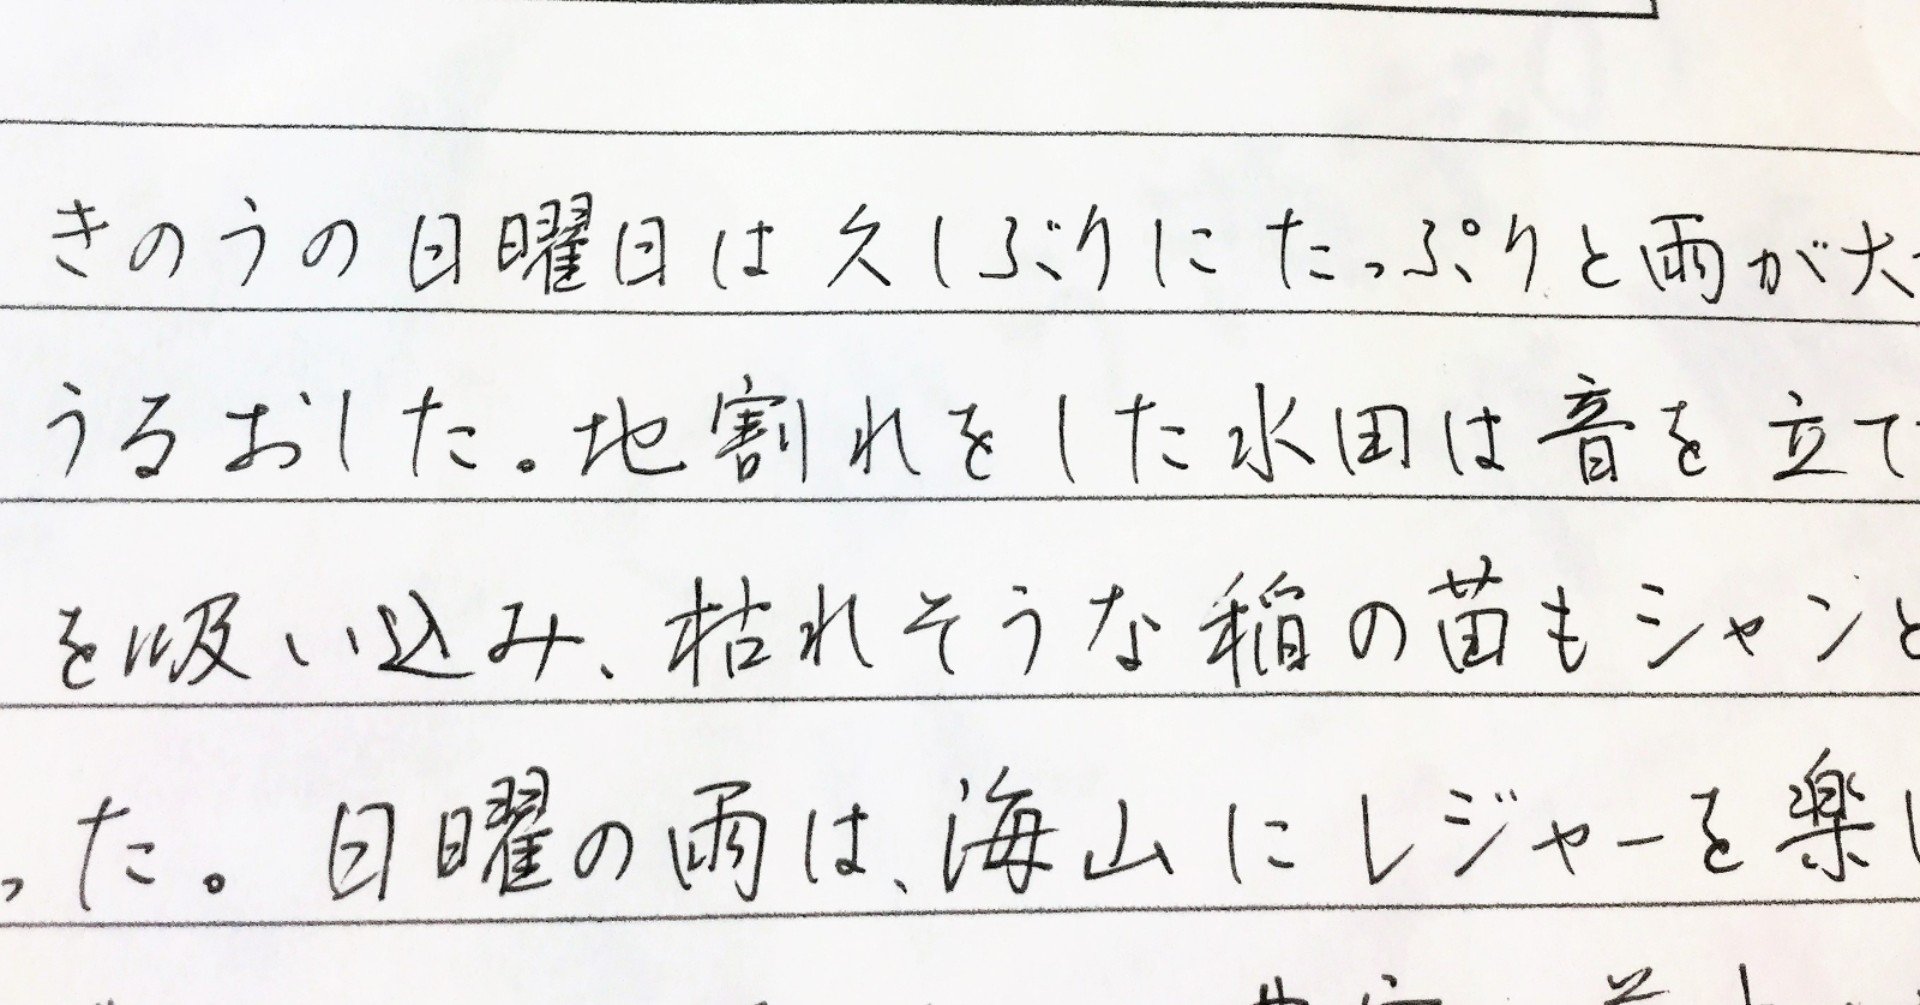 今よりも速くきれいに書く究極の方法 赤松久美子 Note